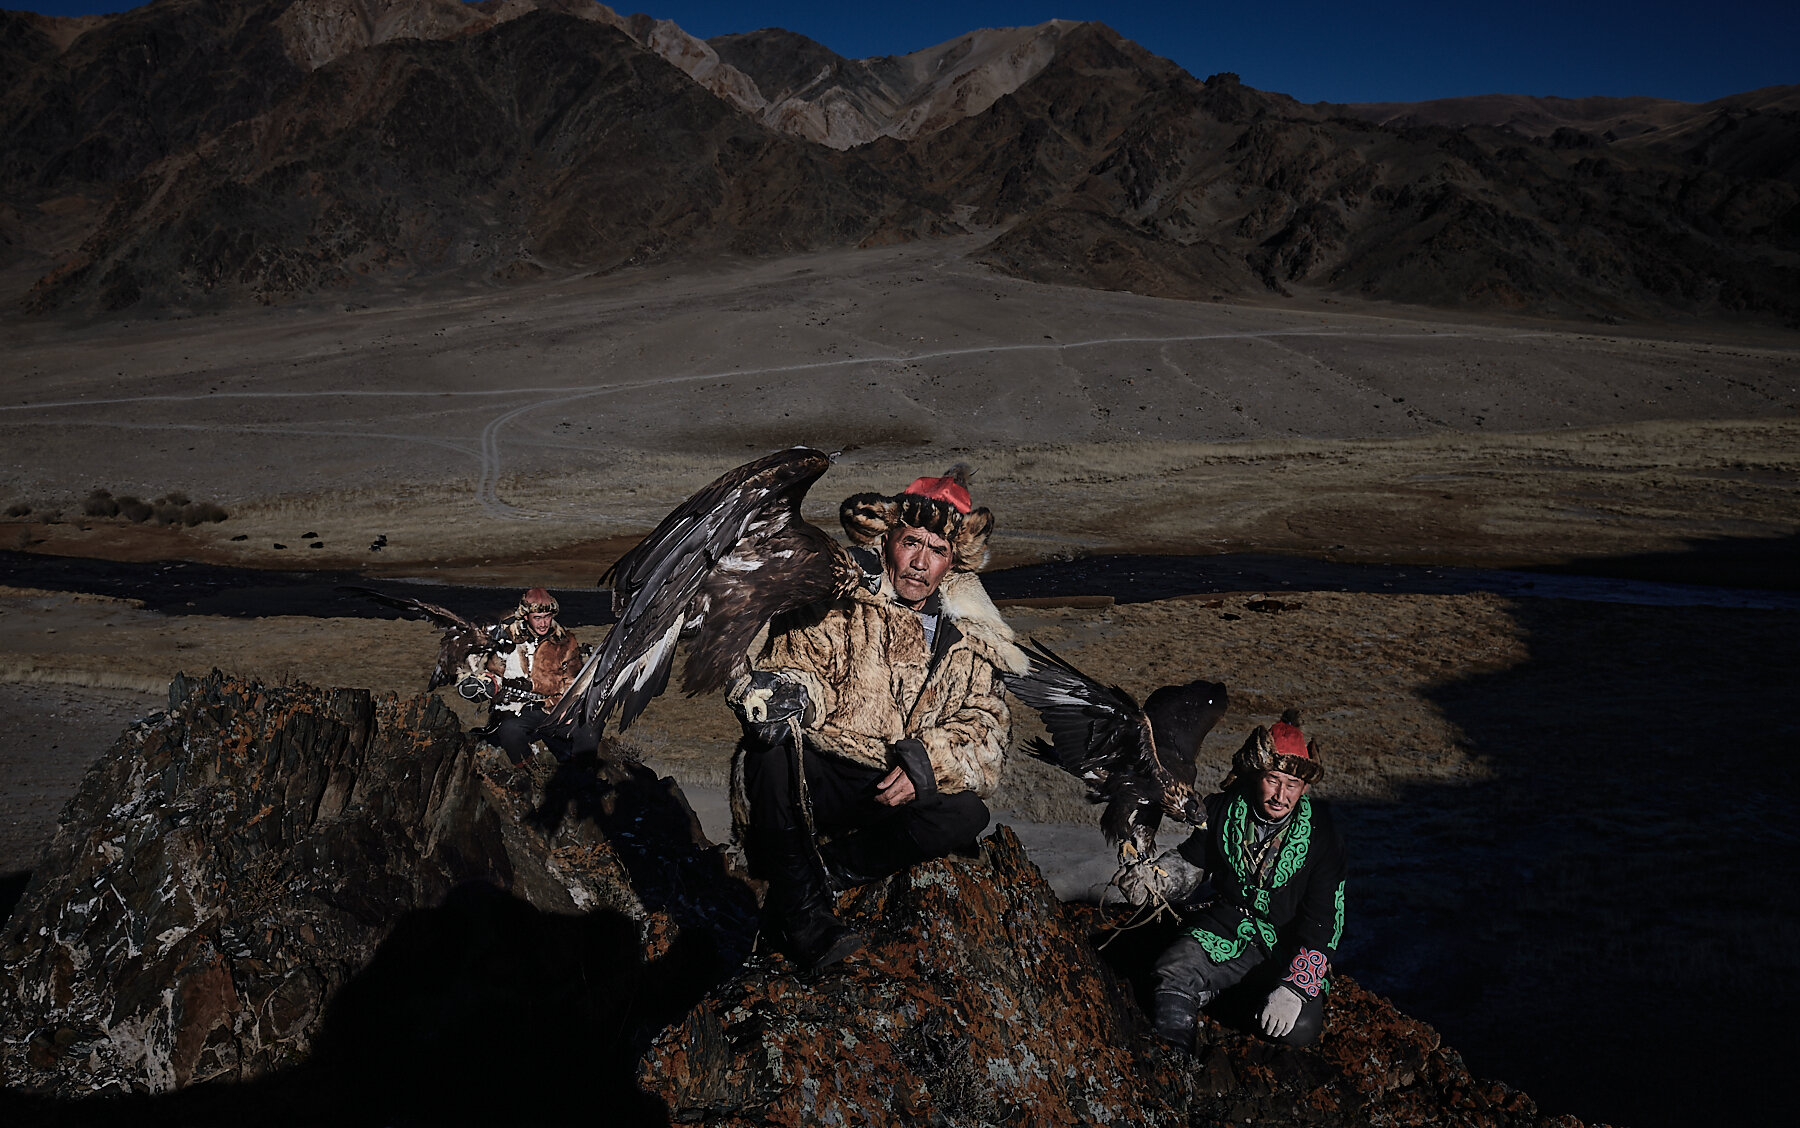 Asker, Aibolat and Baibolat, award-winning Kazakh eagle hunters